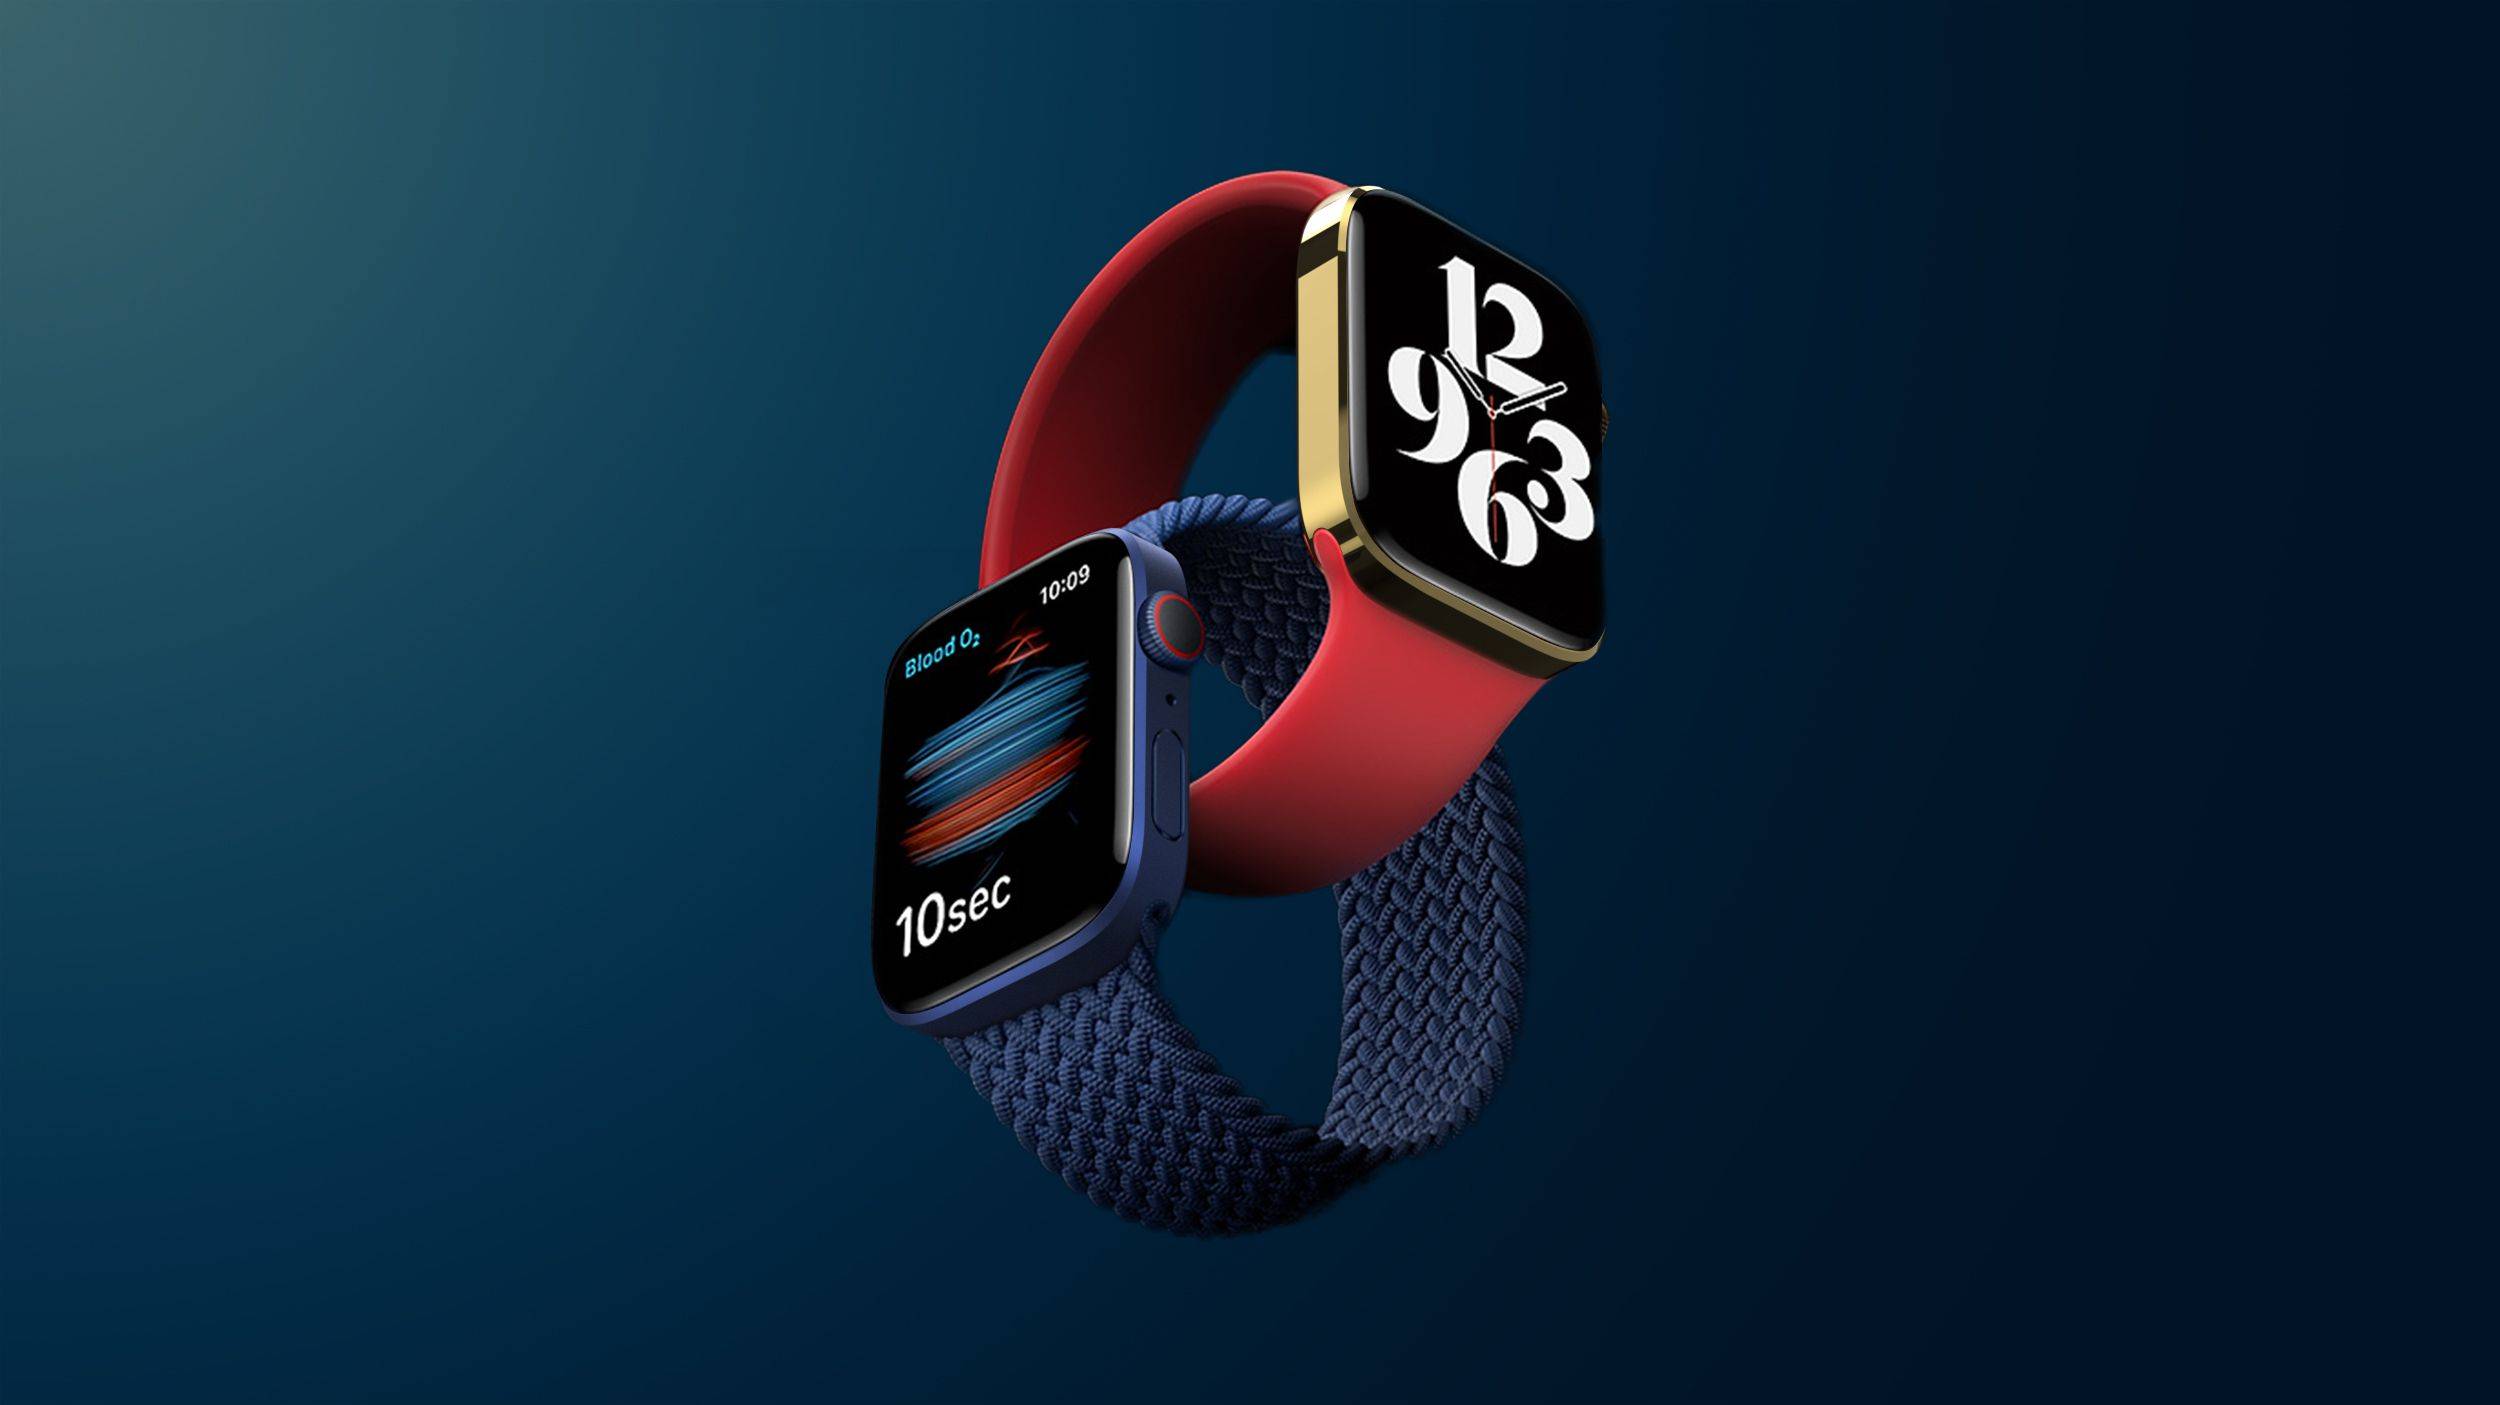 Ming-Chi Kuo: Apple Watch Series 8 będzie w stanie mierzyć temperaturę ciała, a nowe słuchawki AirPods będą w stanie monitorować zdrowie użytkownika